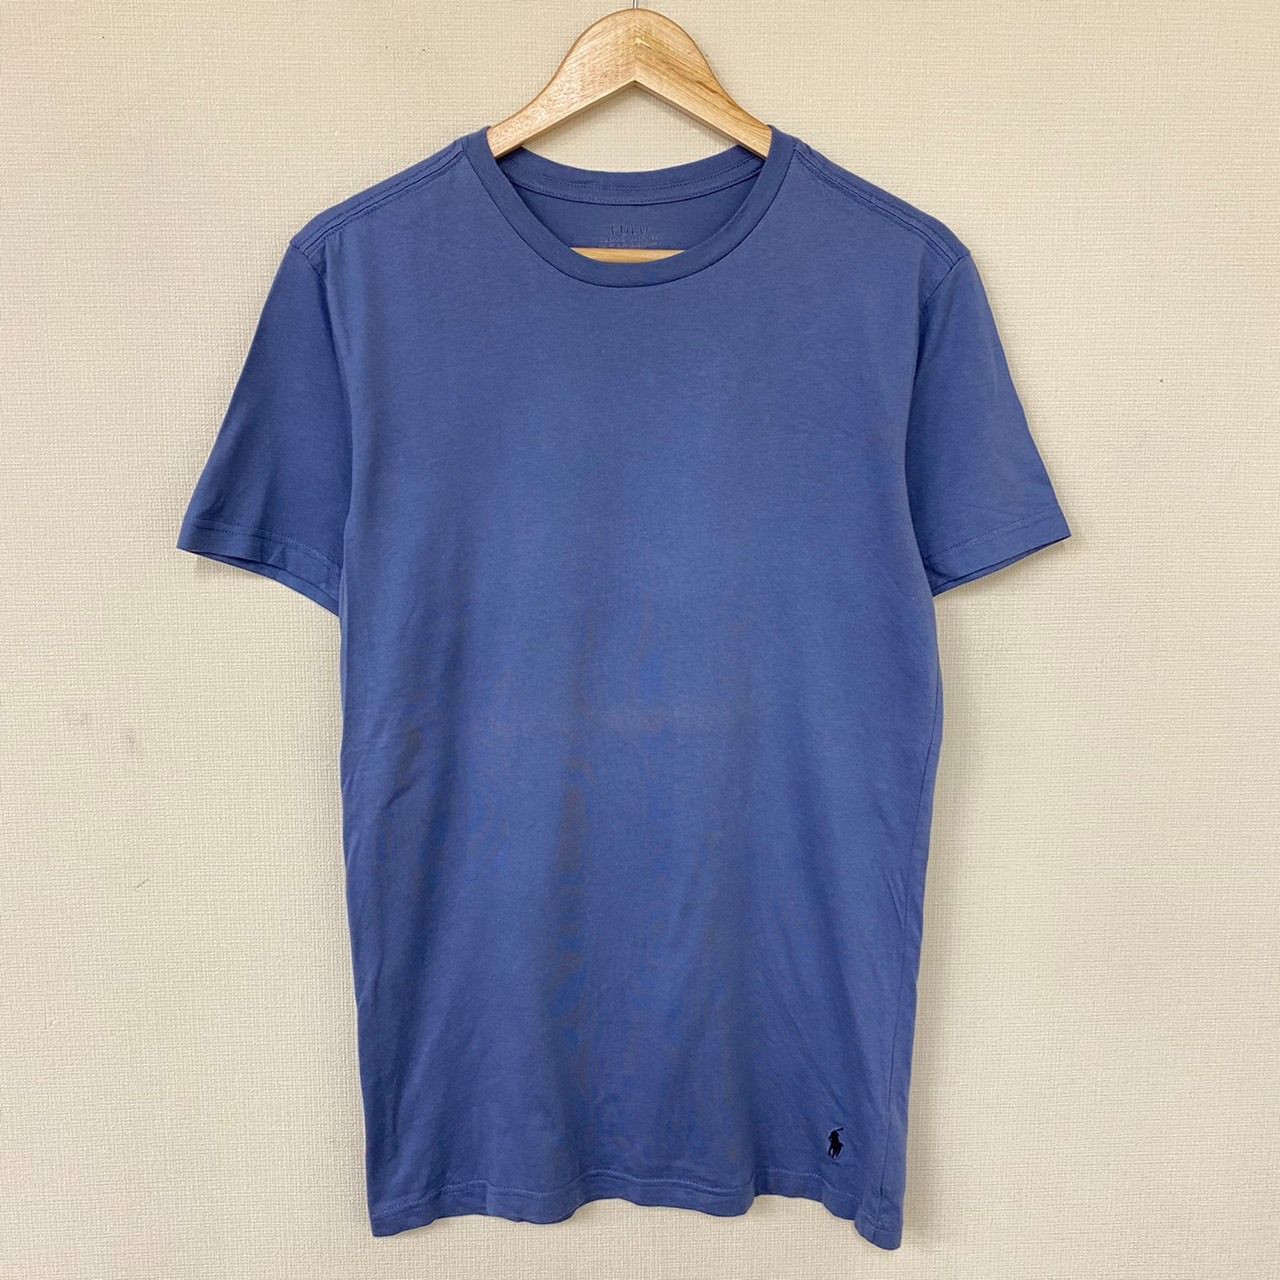 Polo ラルフローレン Tシャツ 半袖 無地 ブルーグレー S - メルカリ